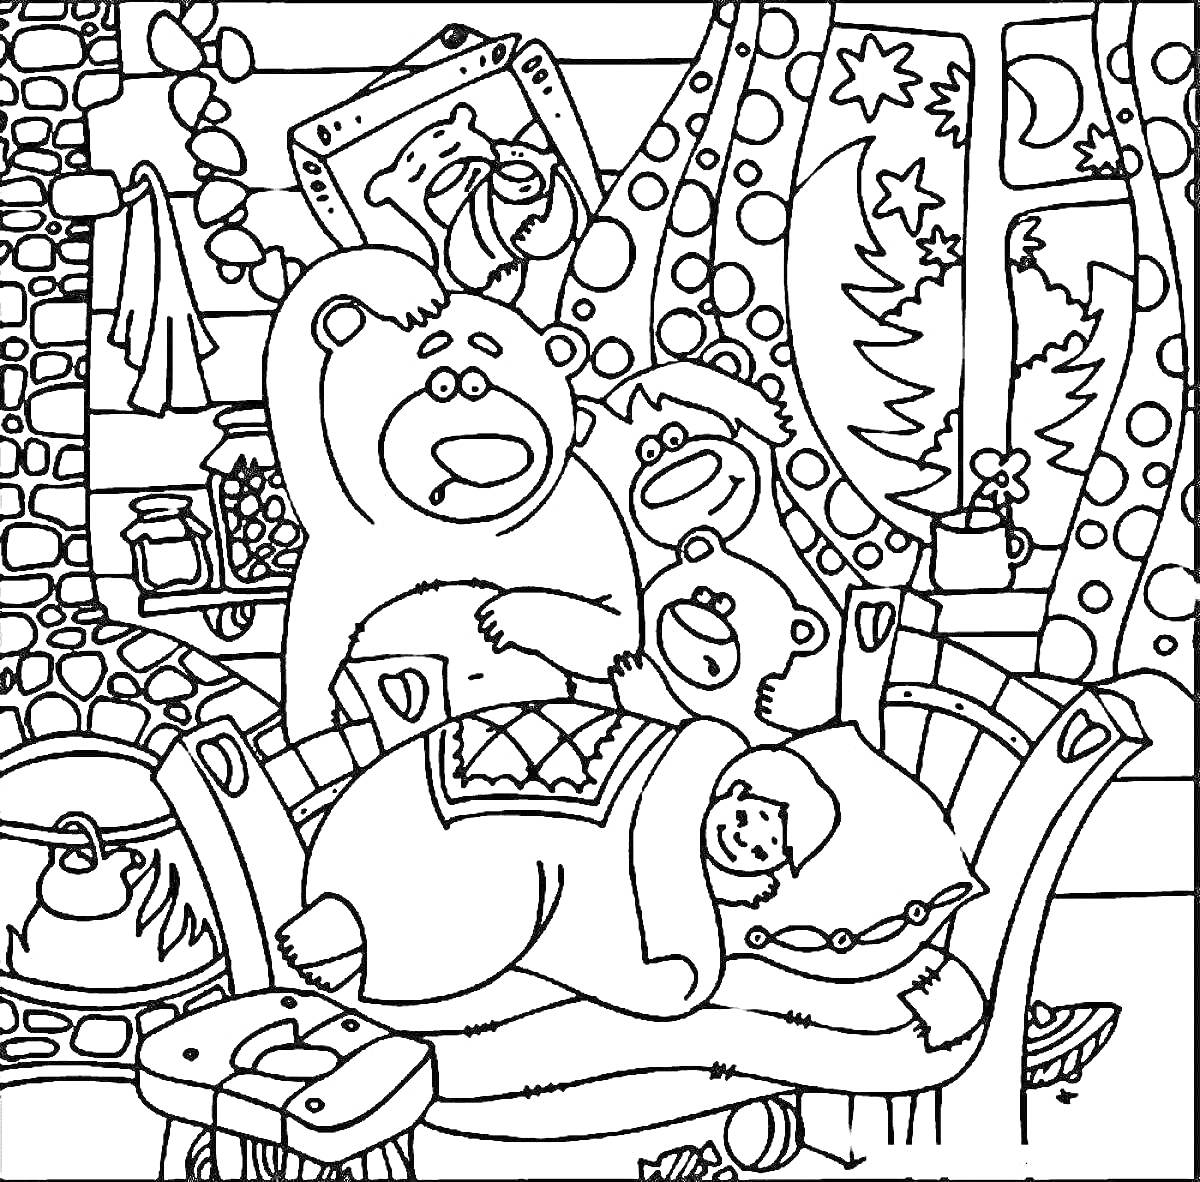 Три медведя в доме с девочкой на кровати, камином, окнами с новогодними украшениями, столиком и декором